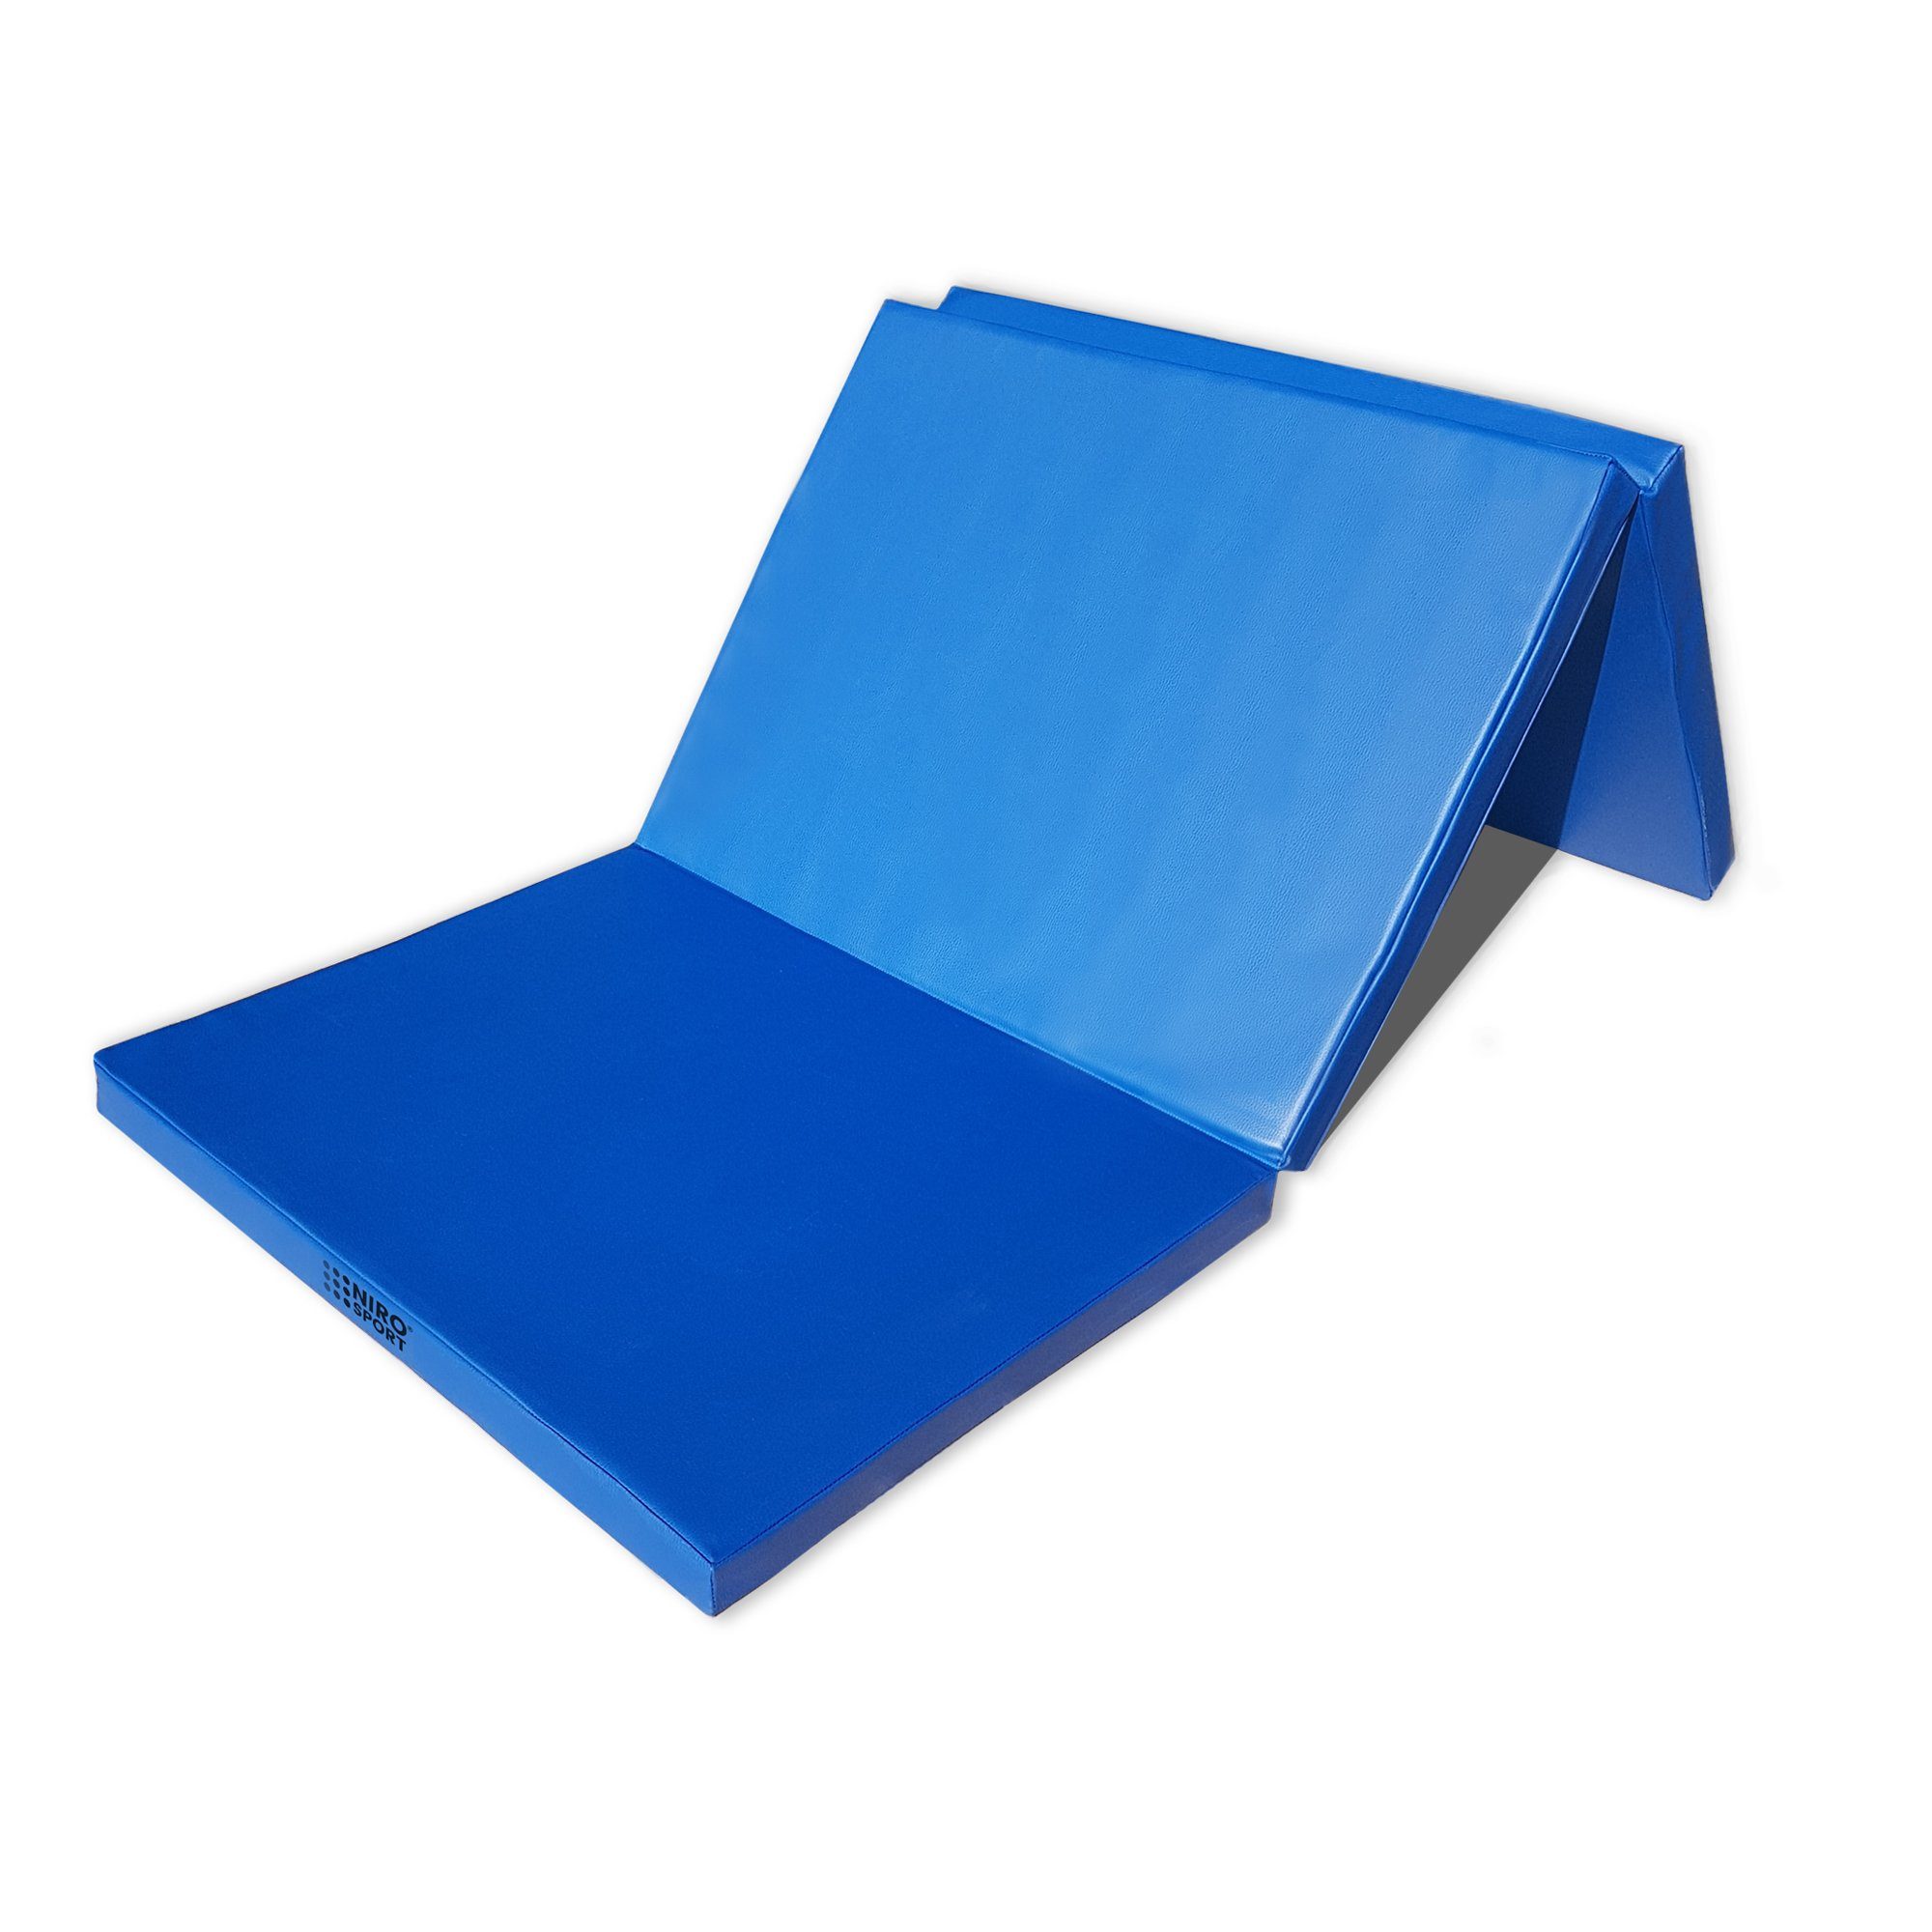 NiroSport Turnmatte Klappmatte Turnmatte 180 x 70 x 8 cm Gymnastikmatte Fitness (1er-Pack), abwaschbar, robust blau